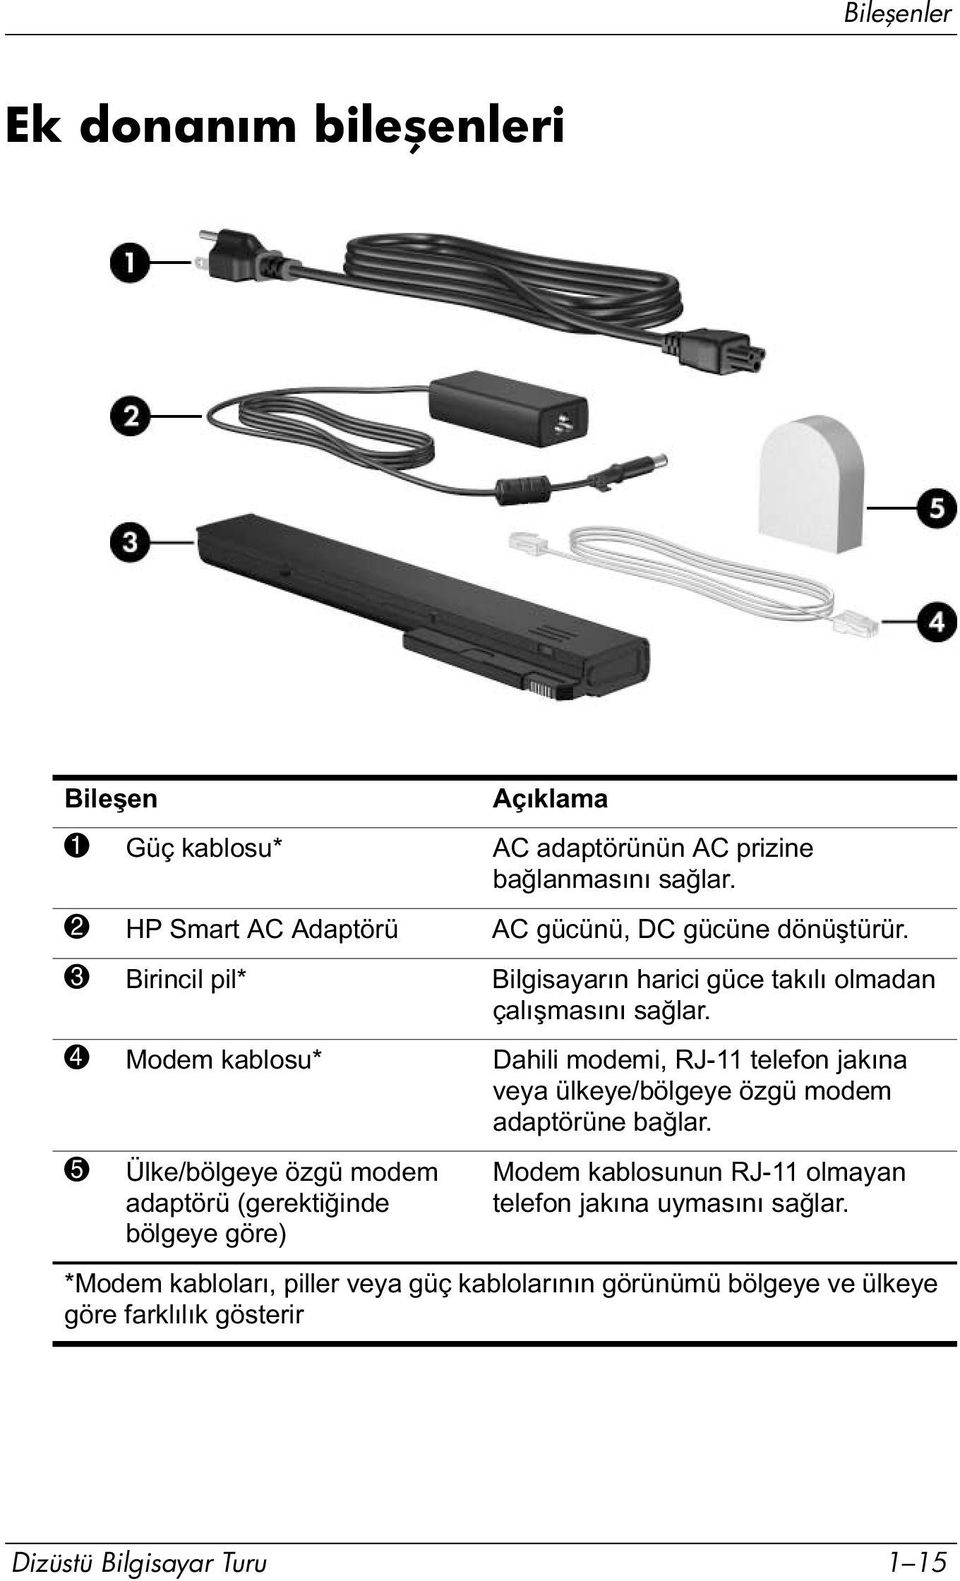 4 Modem kablosu* Dahili modemi, RJ-11 telefon jakına veya ülkeye/bölgeye özgü modem adaptörüne bağlar.